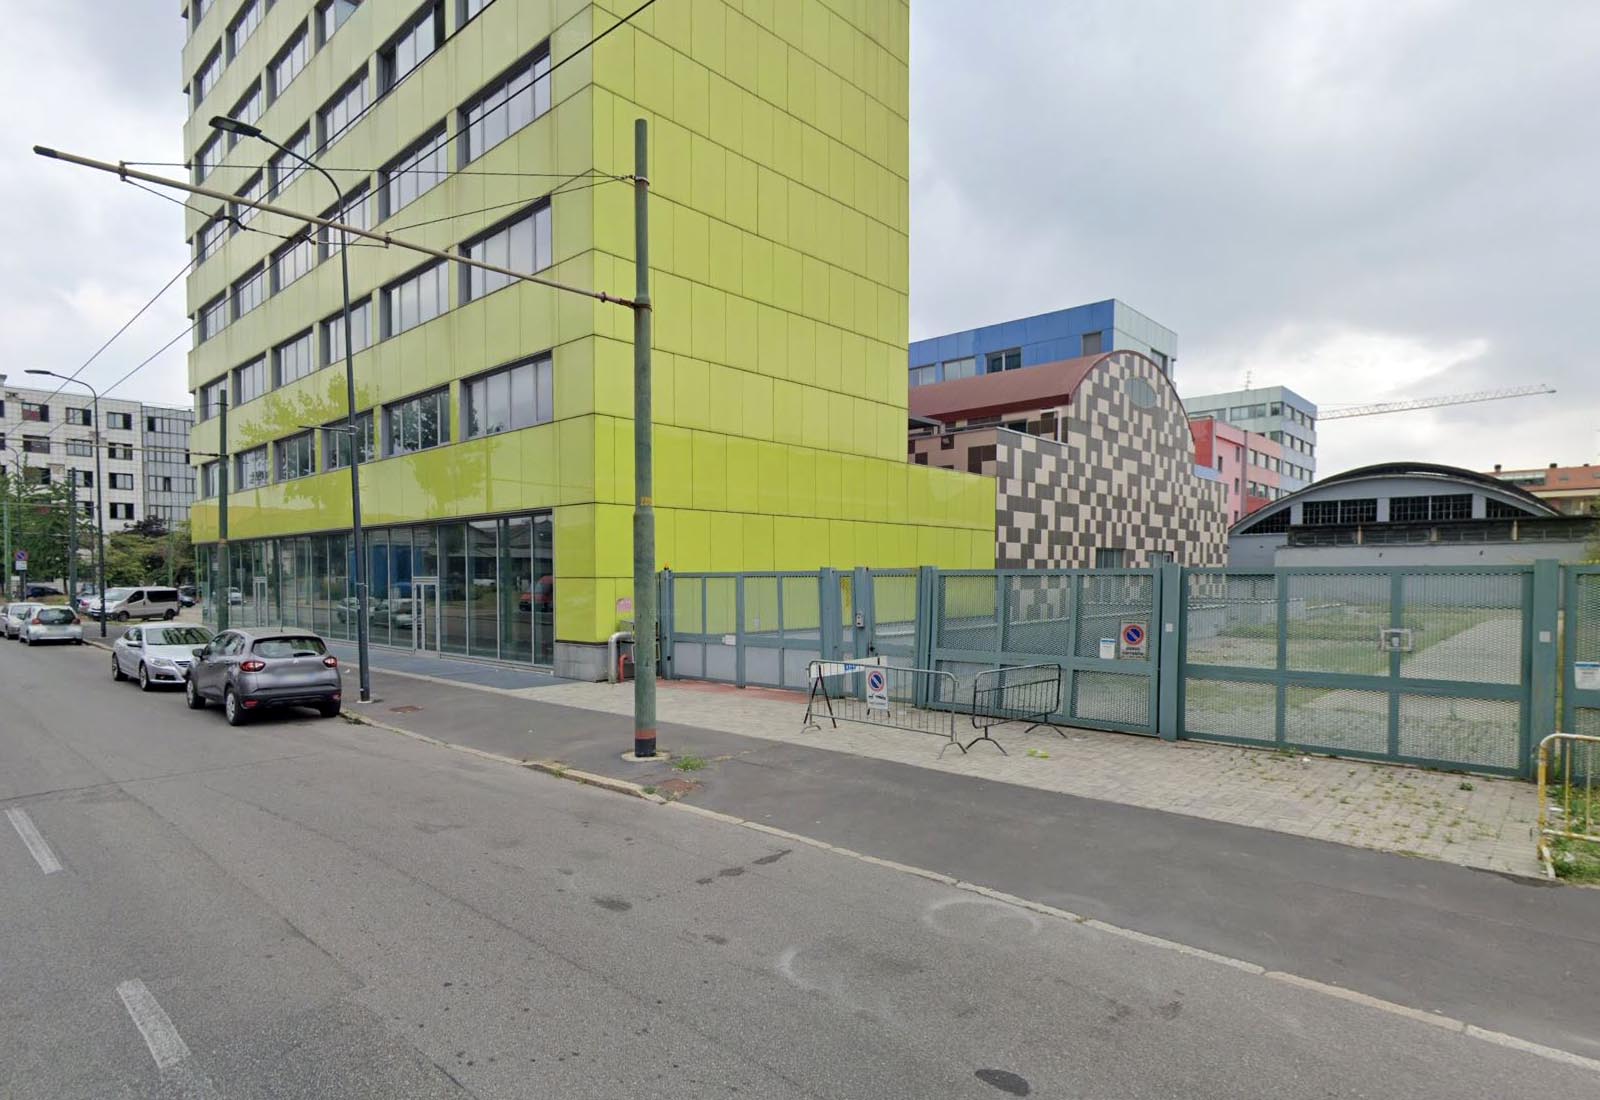 Opere di urbanizzazione a Milano in via Durando - Vista da via Cosenz